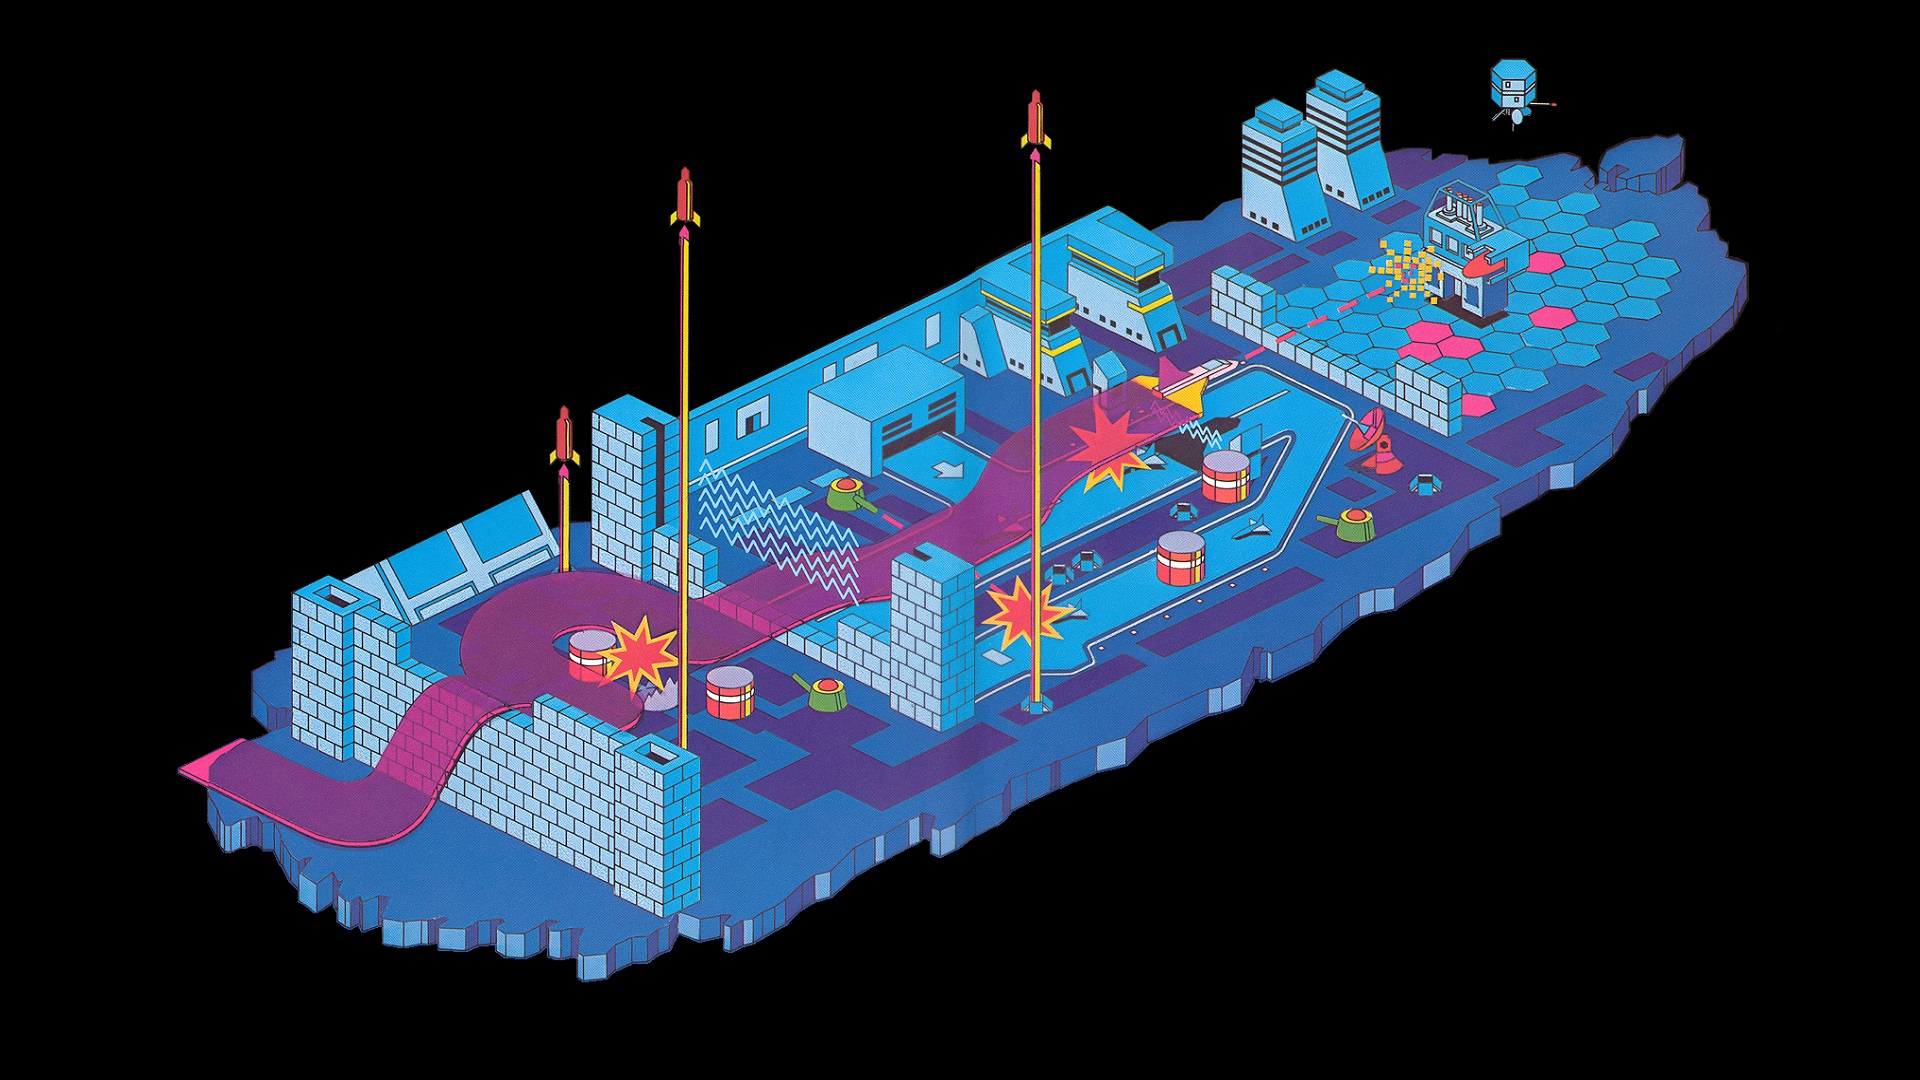 بازی zaxxon  با نمایش کشتی آبی رنگ با گرافیک آکسونومتری و سه بعدی